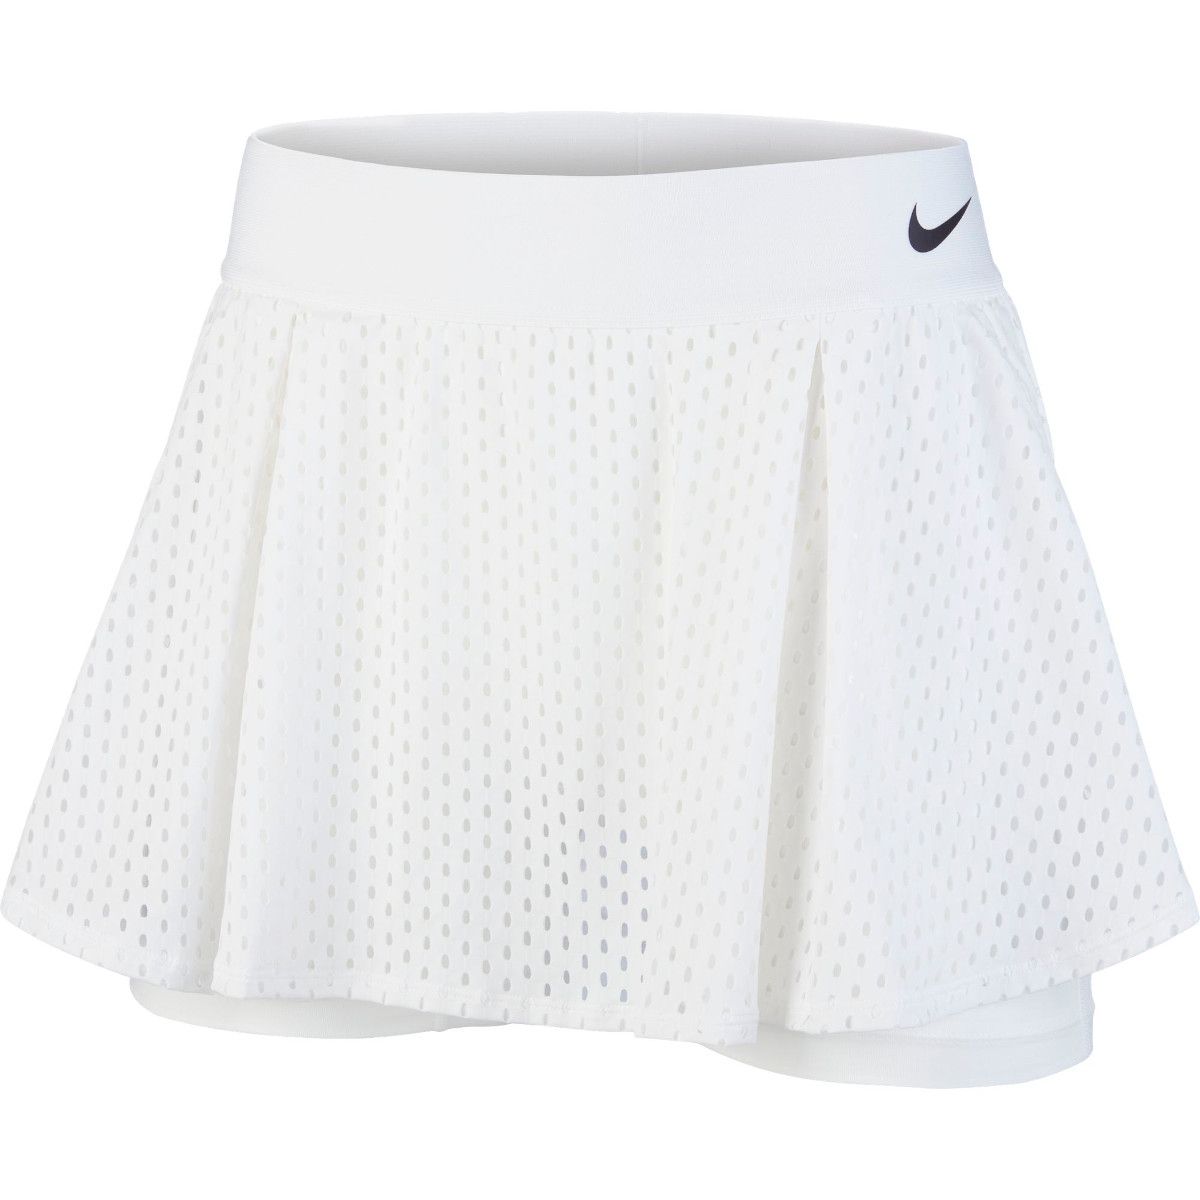 NikeCourt Dri-FIT Women's Tennis Skirt CK8397-100